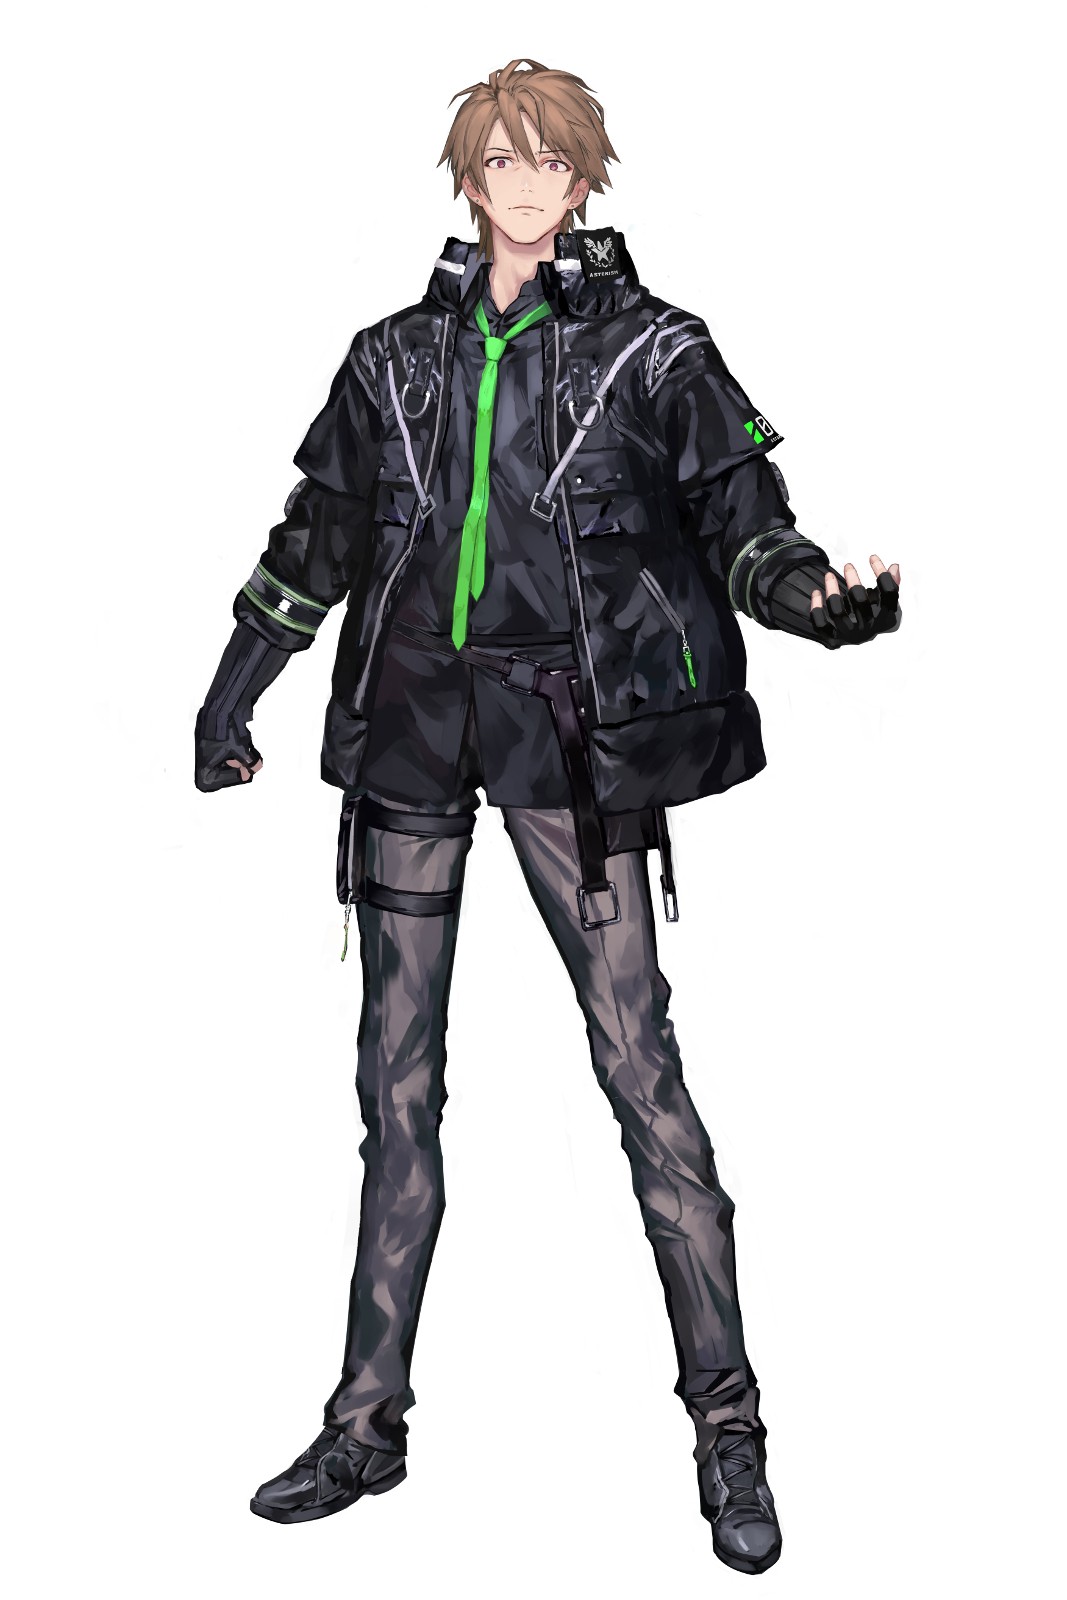 模拟战略 RPG《Relayer》公布明坂聪美饰演的主角 “泰菈” 等登场角色资讯